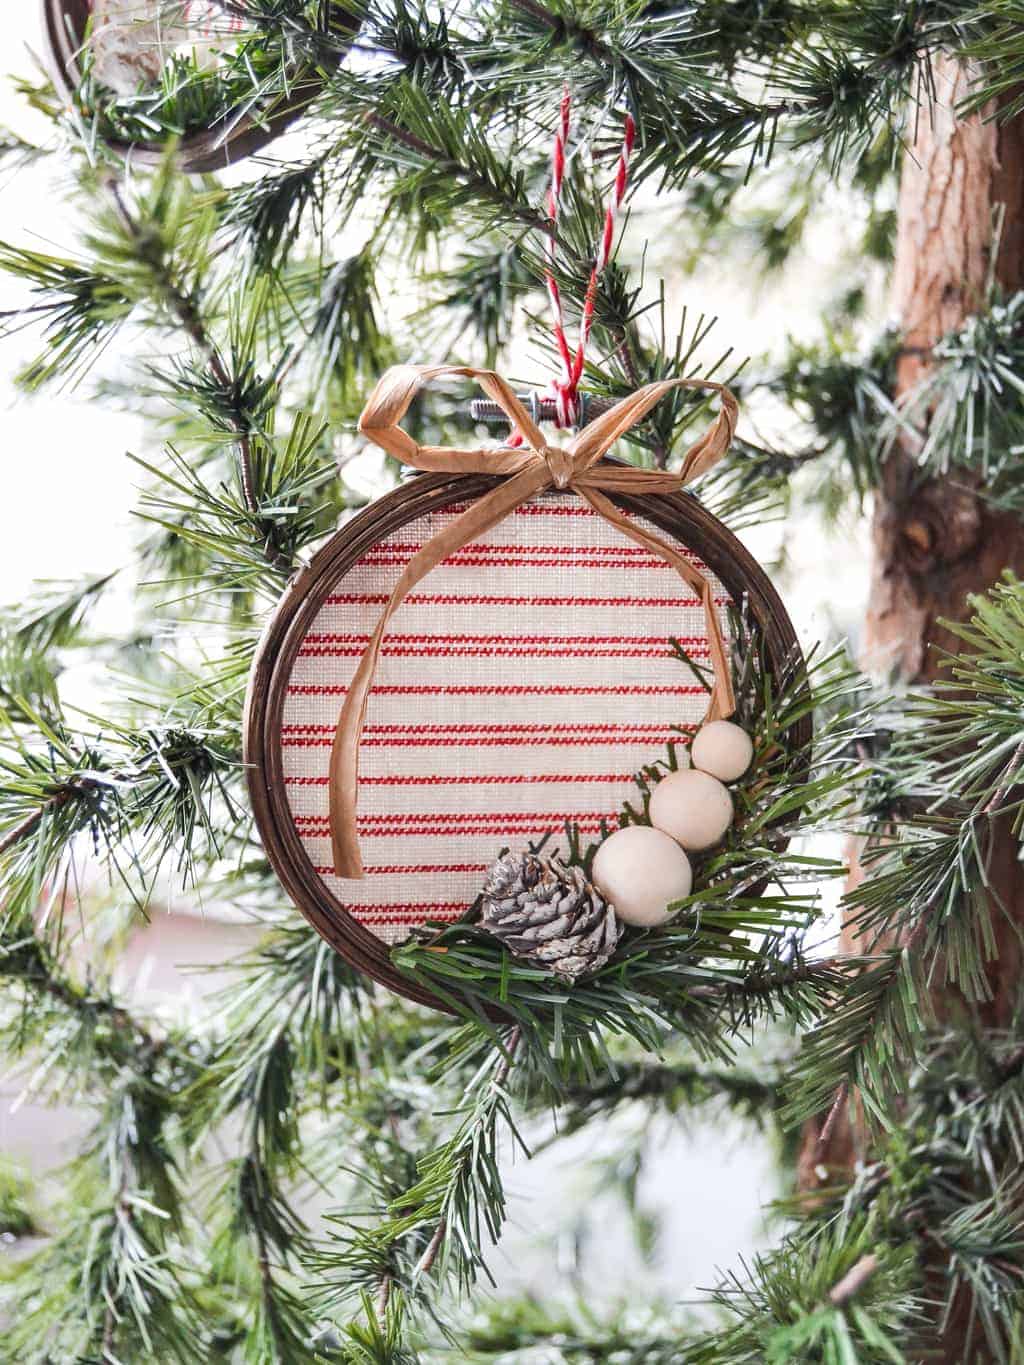 Vintage Looking Embroidery Hoop Christmas Ornament